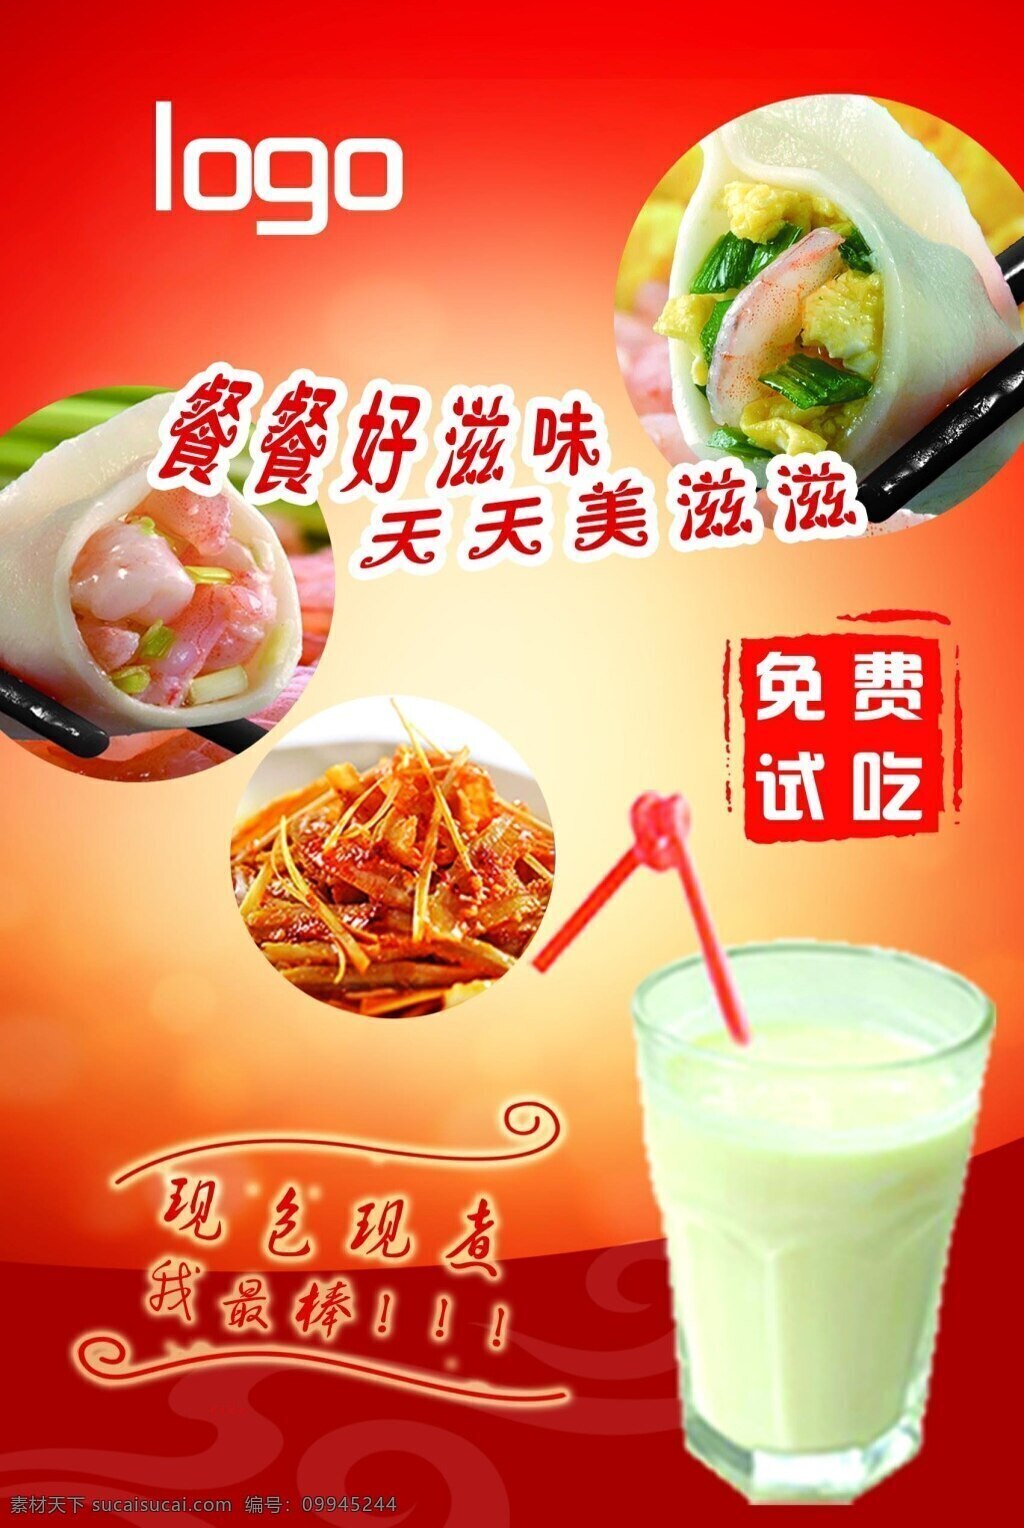 红底展板 红色背景 餐饮 快餐店 可用 水饺 凉菜 酸奶